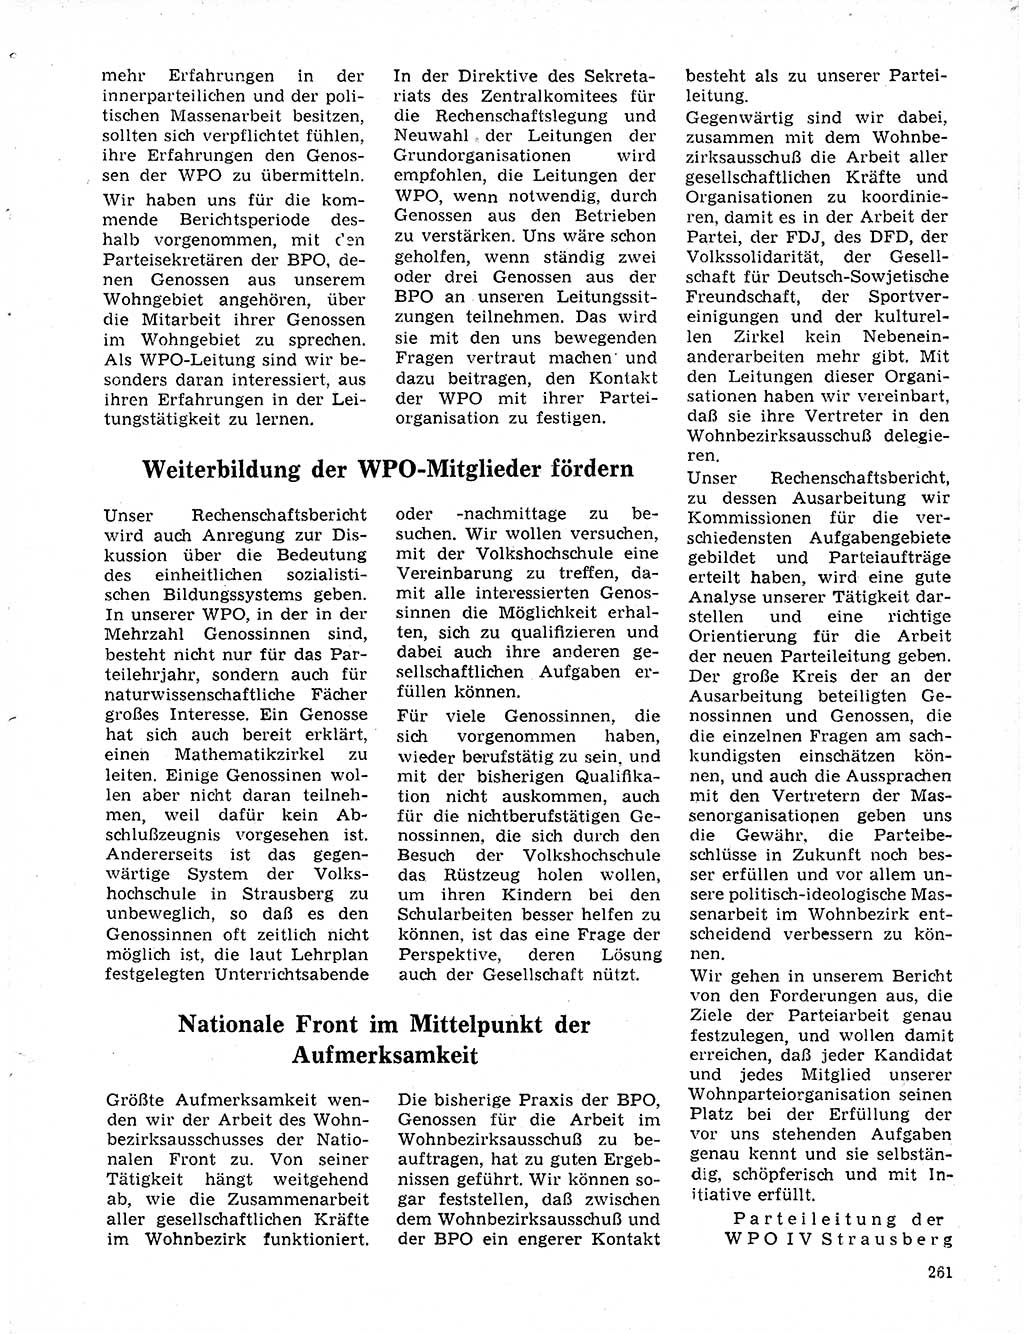 Neuer Weg (NW), Organ des Zentralkomitees (ZK) der SED (Sozialistische Einheitspartei Deutschlands) für Fragen des Parteilebens, 20. Jahrgang [Deutsche Demokratische Republik (DDR)] 1965, Seite 245 (NW ZK SED DDR 1965, S. 245)